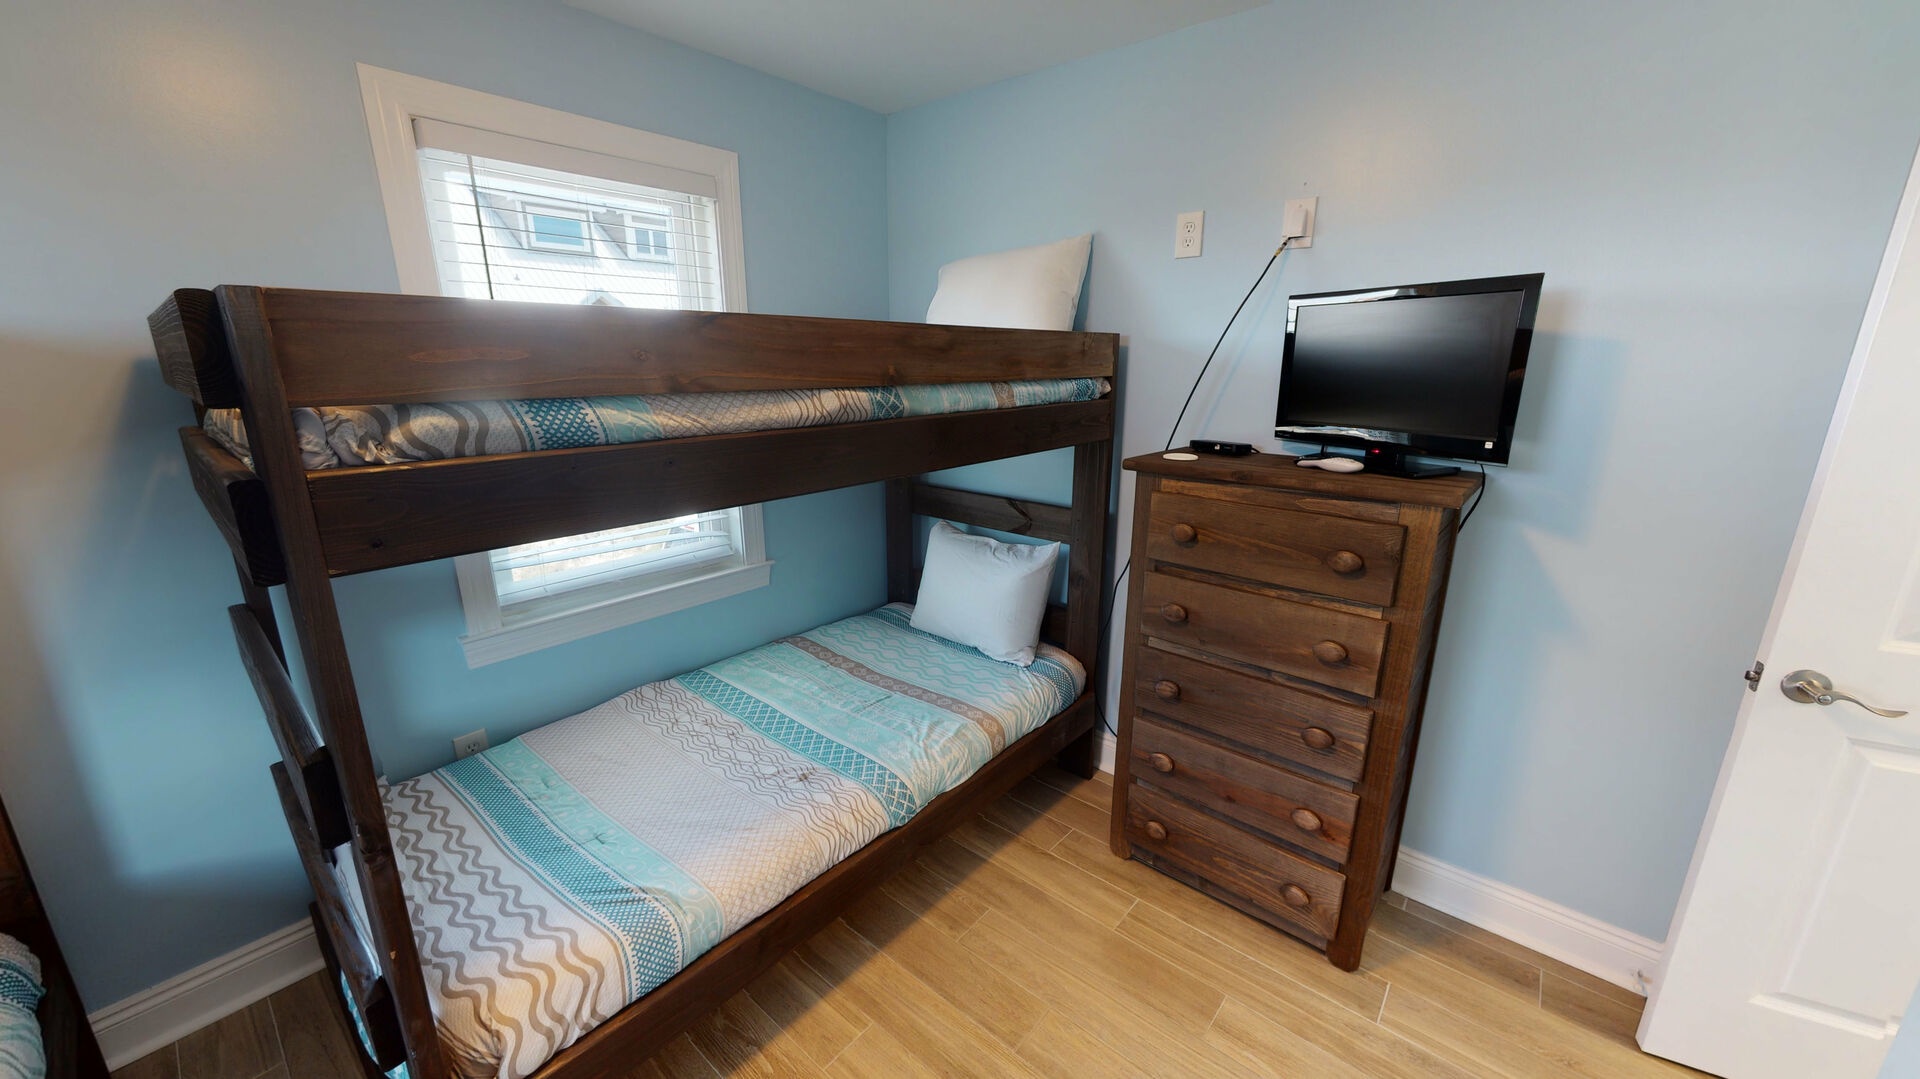 Bedroom 3, 2 twin over twin bunks, sleeps 4, TV